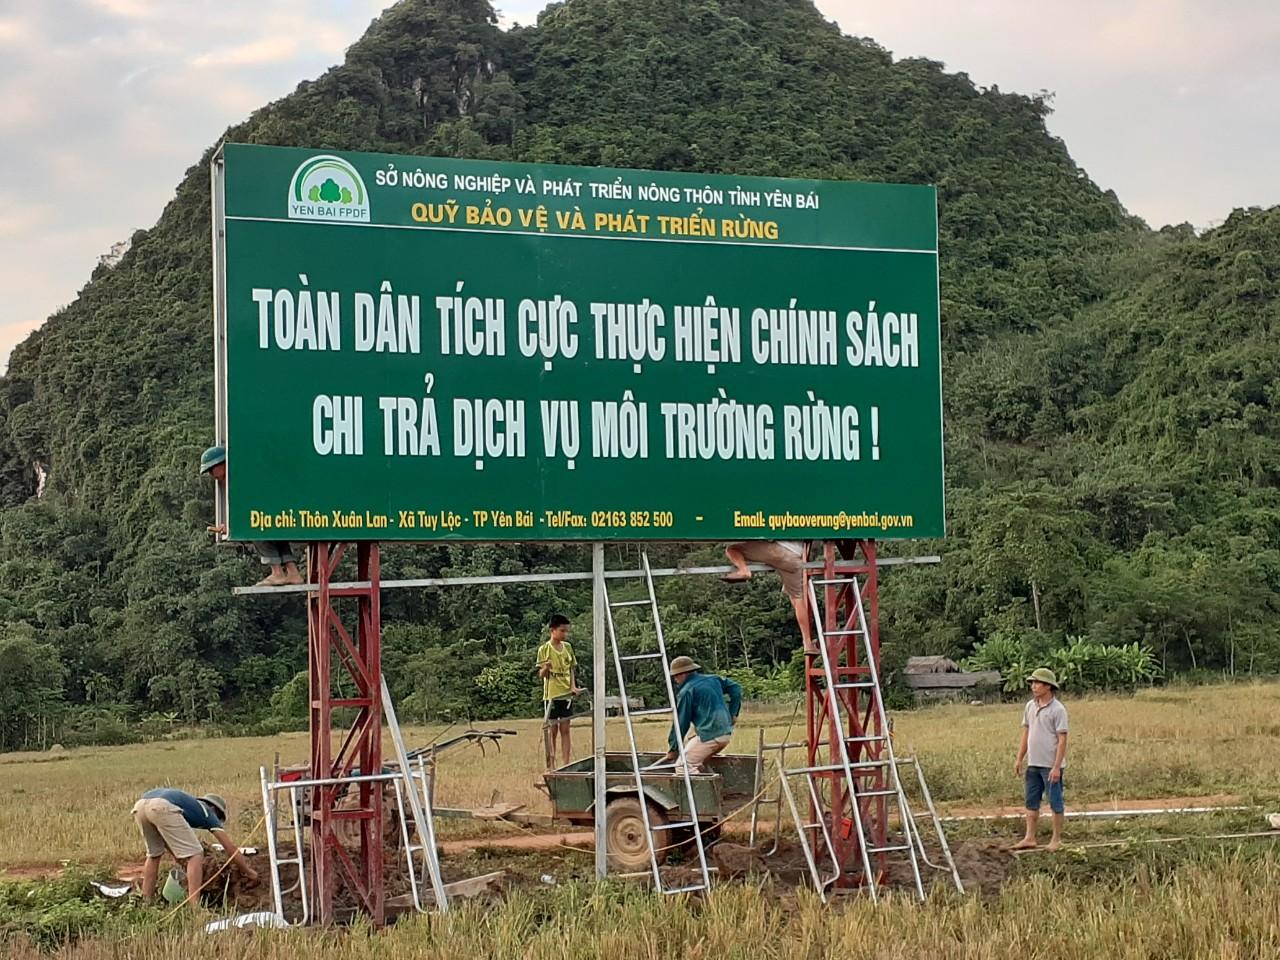 Công trình chào mừng 60 năm ngày lâm nghiệp Việt Nam (28-11-1959 - 28-11-2019) của Quỹ Bảo vệ và Phát triển rừng tỉnh Yên Bái